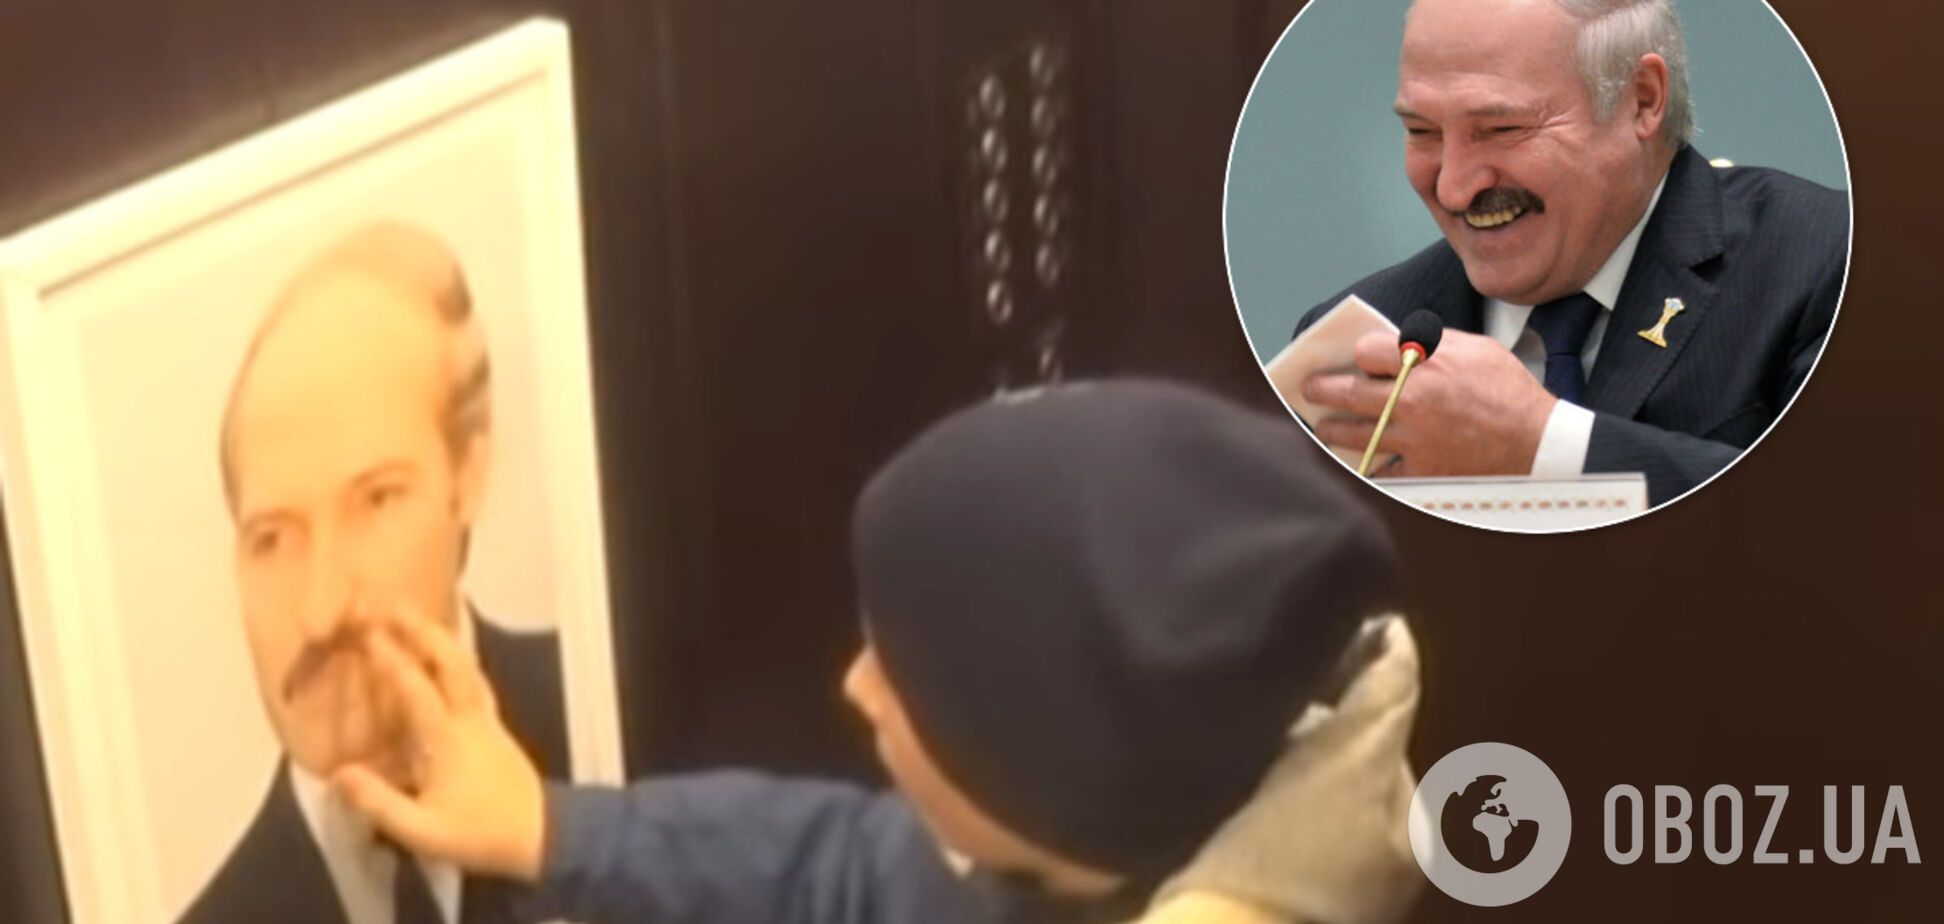 'Господи, який жах!' Портрет Лукашенка в ліфті здивував білорусів. Кумедне відео